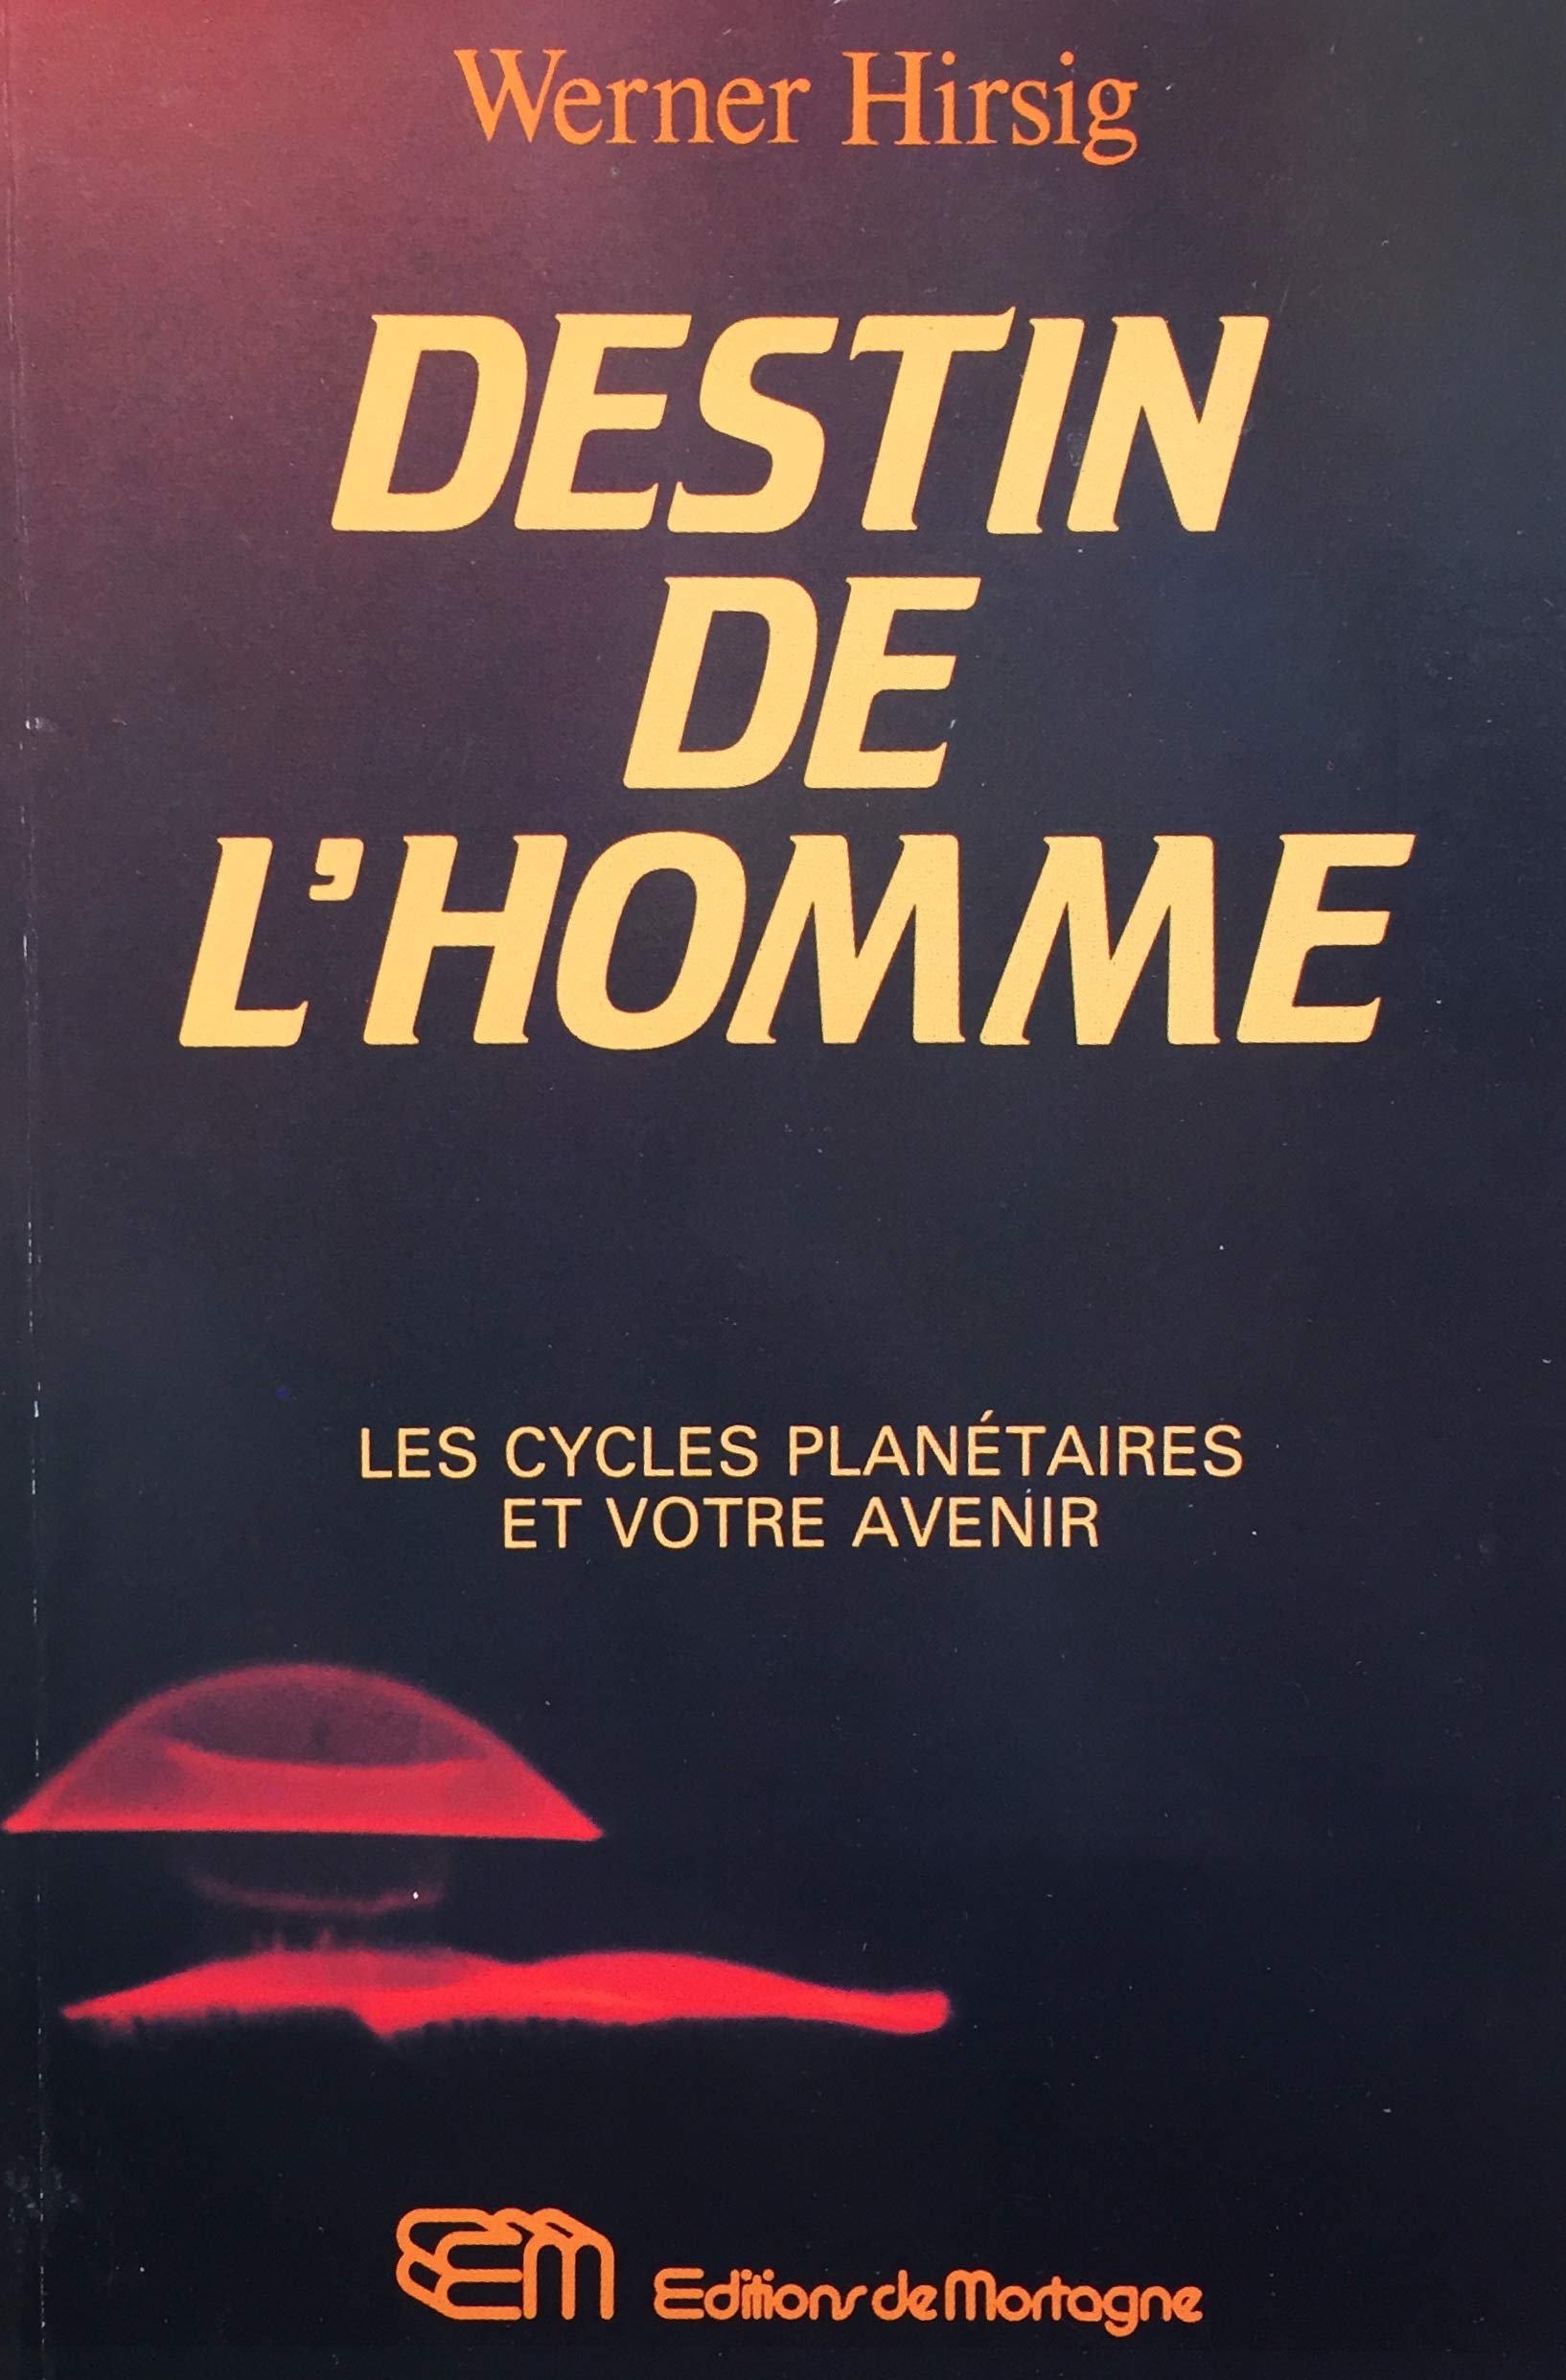 Livre ISBN 2890740668 Destin de l'homme : Les cycles planétaires et votre avenir (Werner Hirsig)